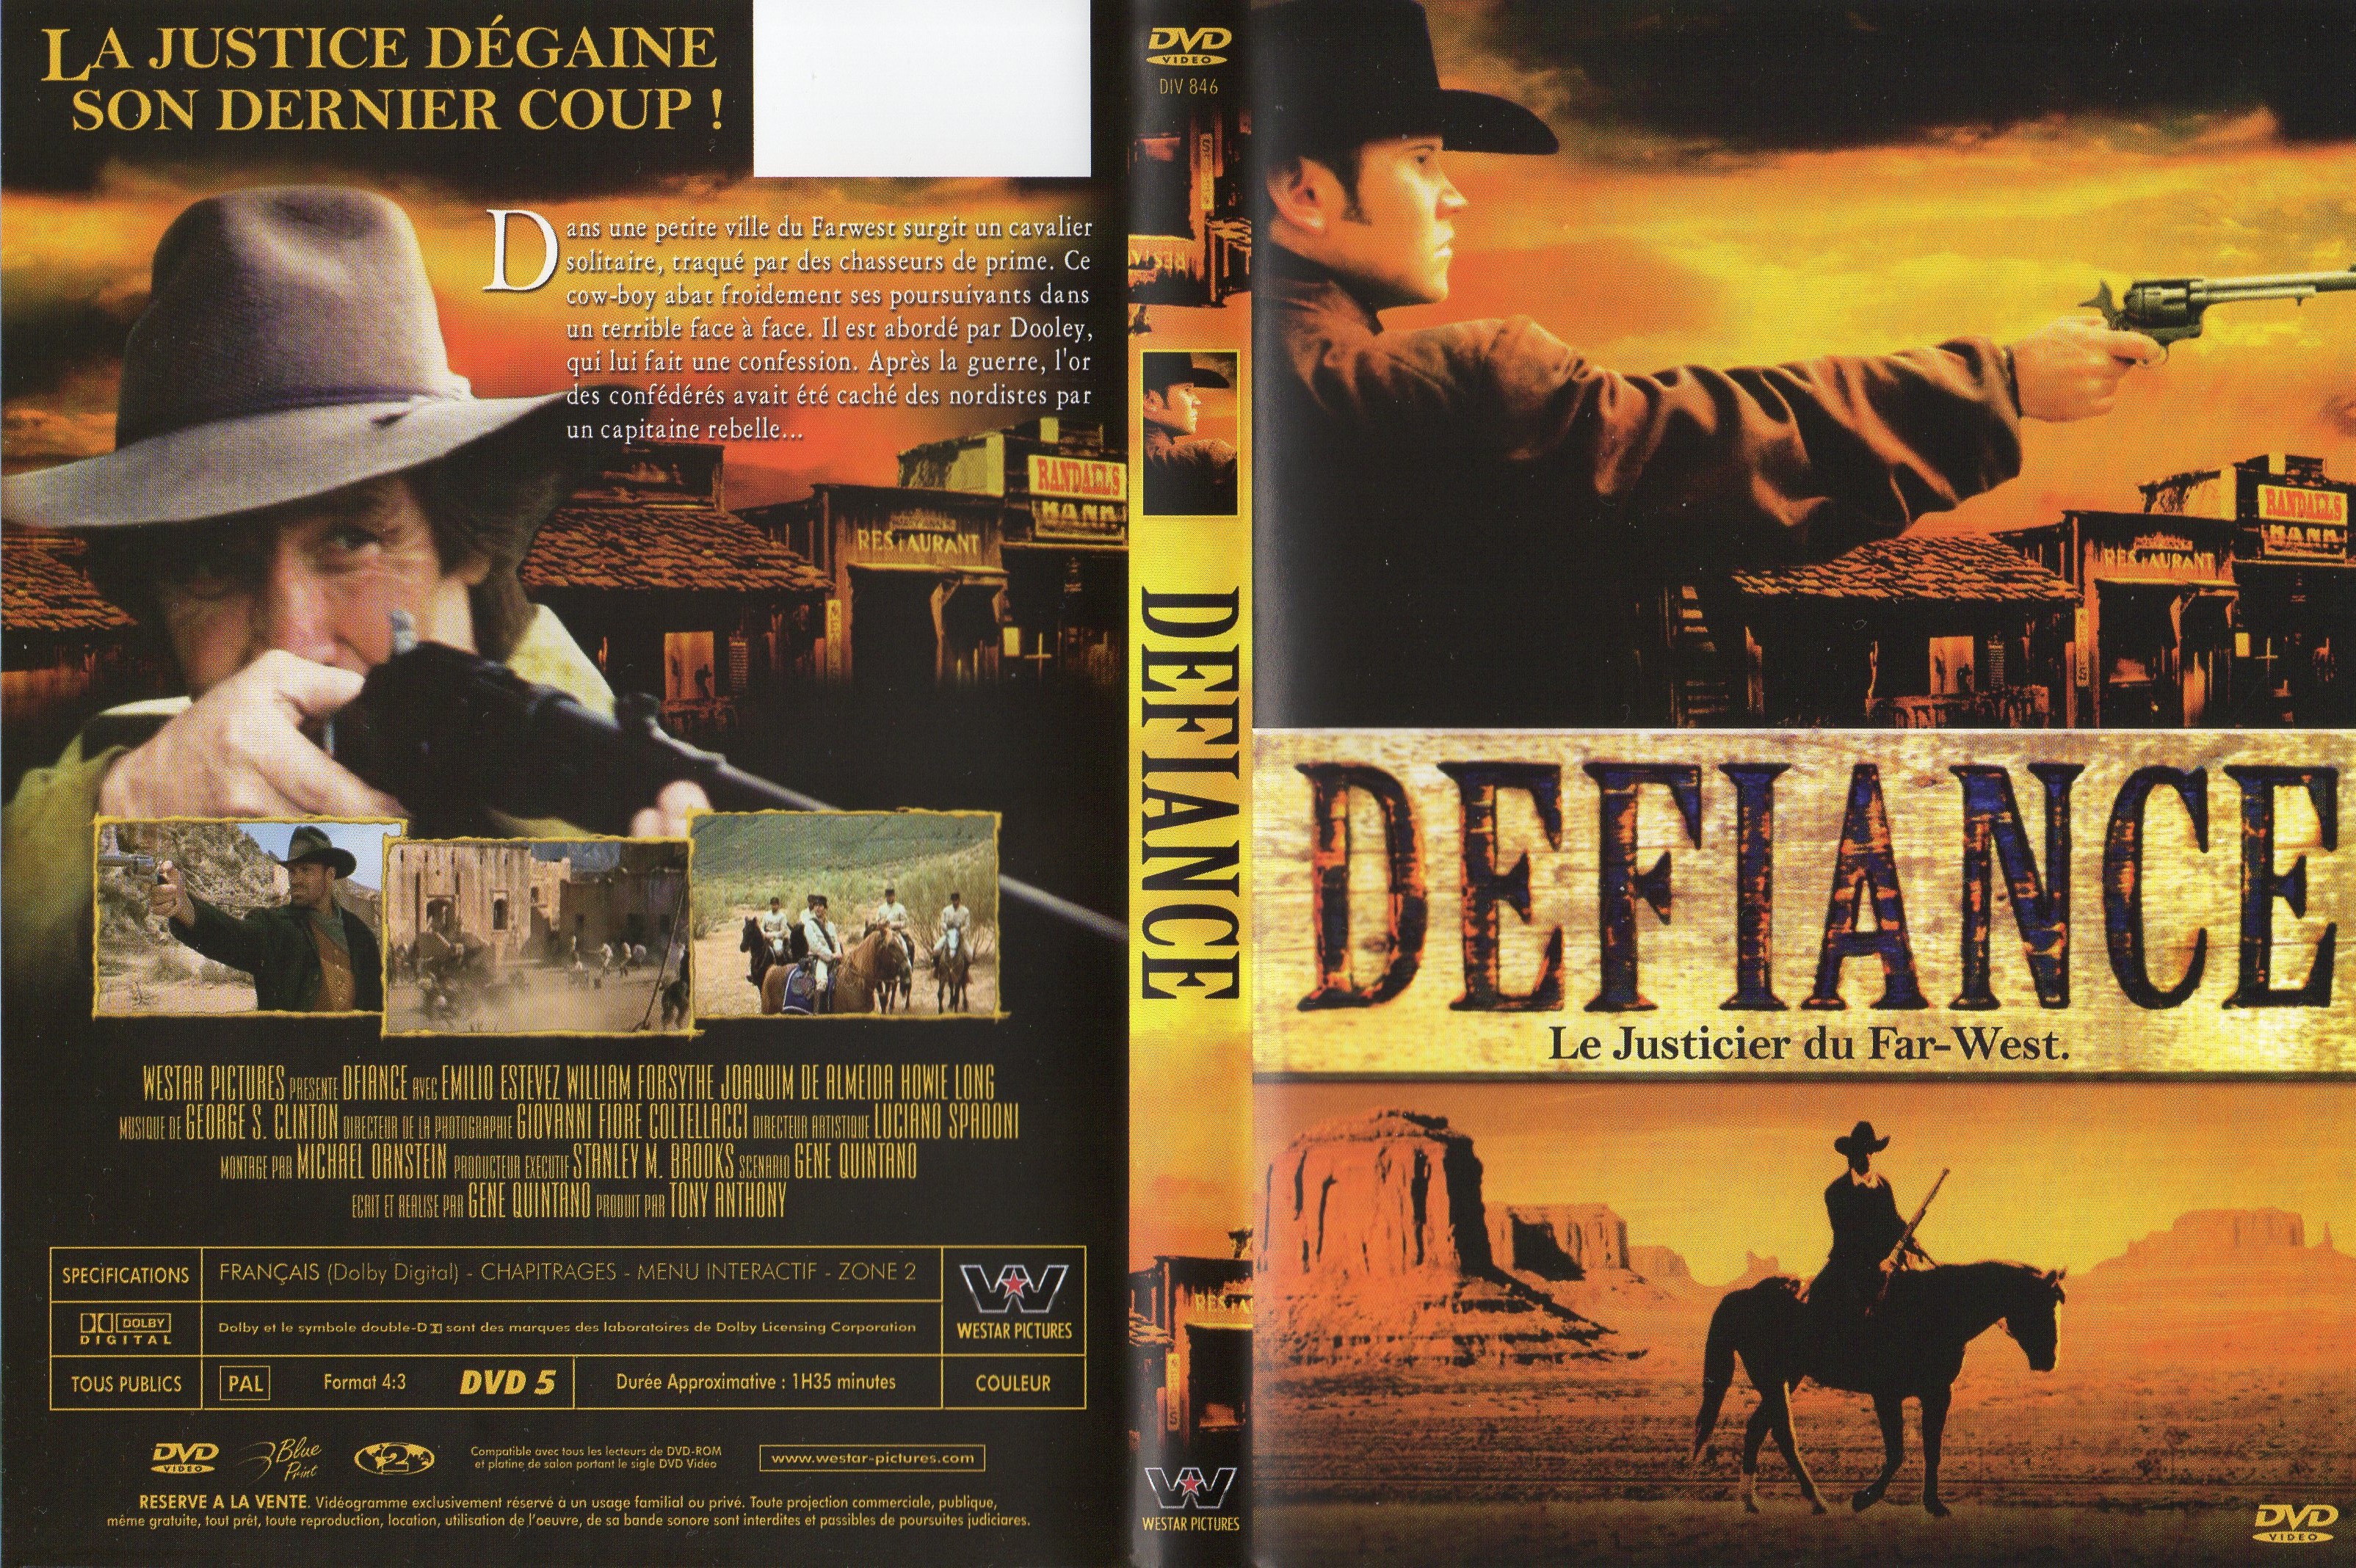 Jaquette DVD Defiance